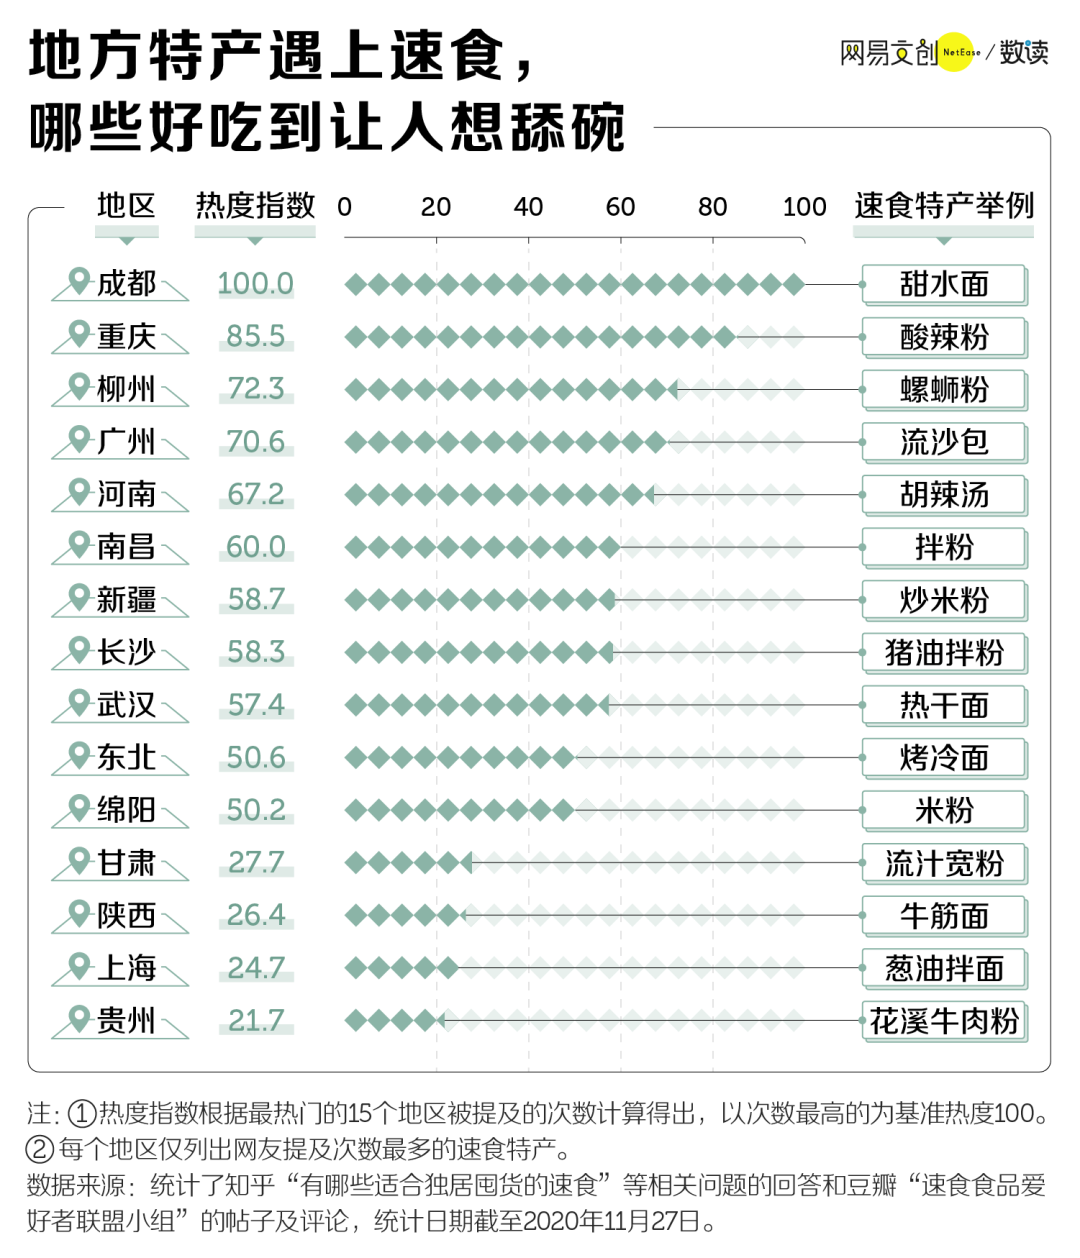 中国人最喜欢的速食是什么 网红速食好评排行榜